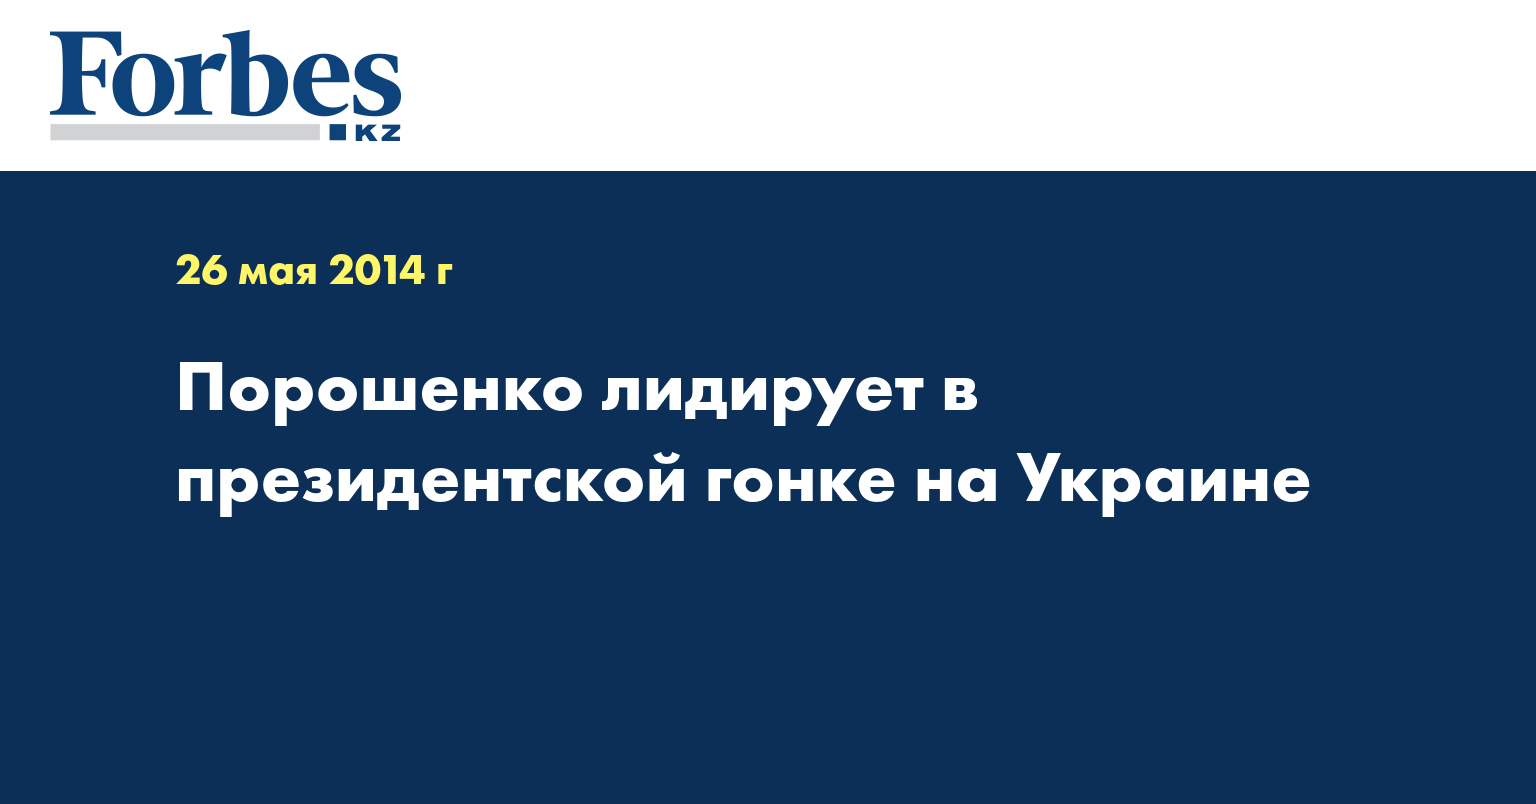 Порошенко лидирует в президентской гонке на Украине